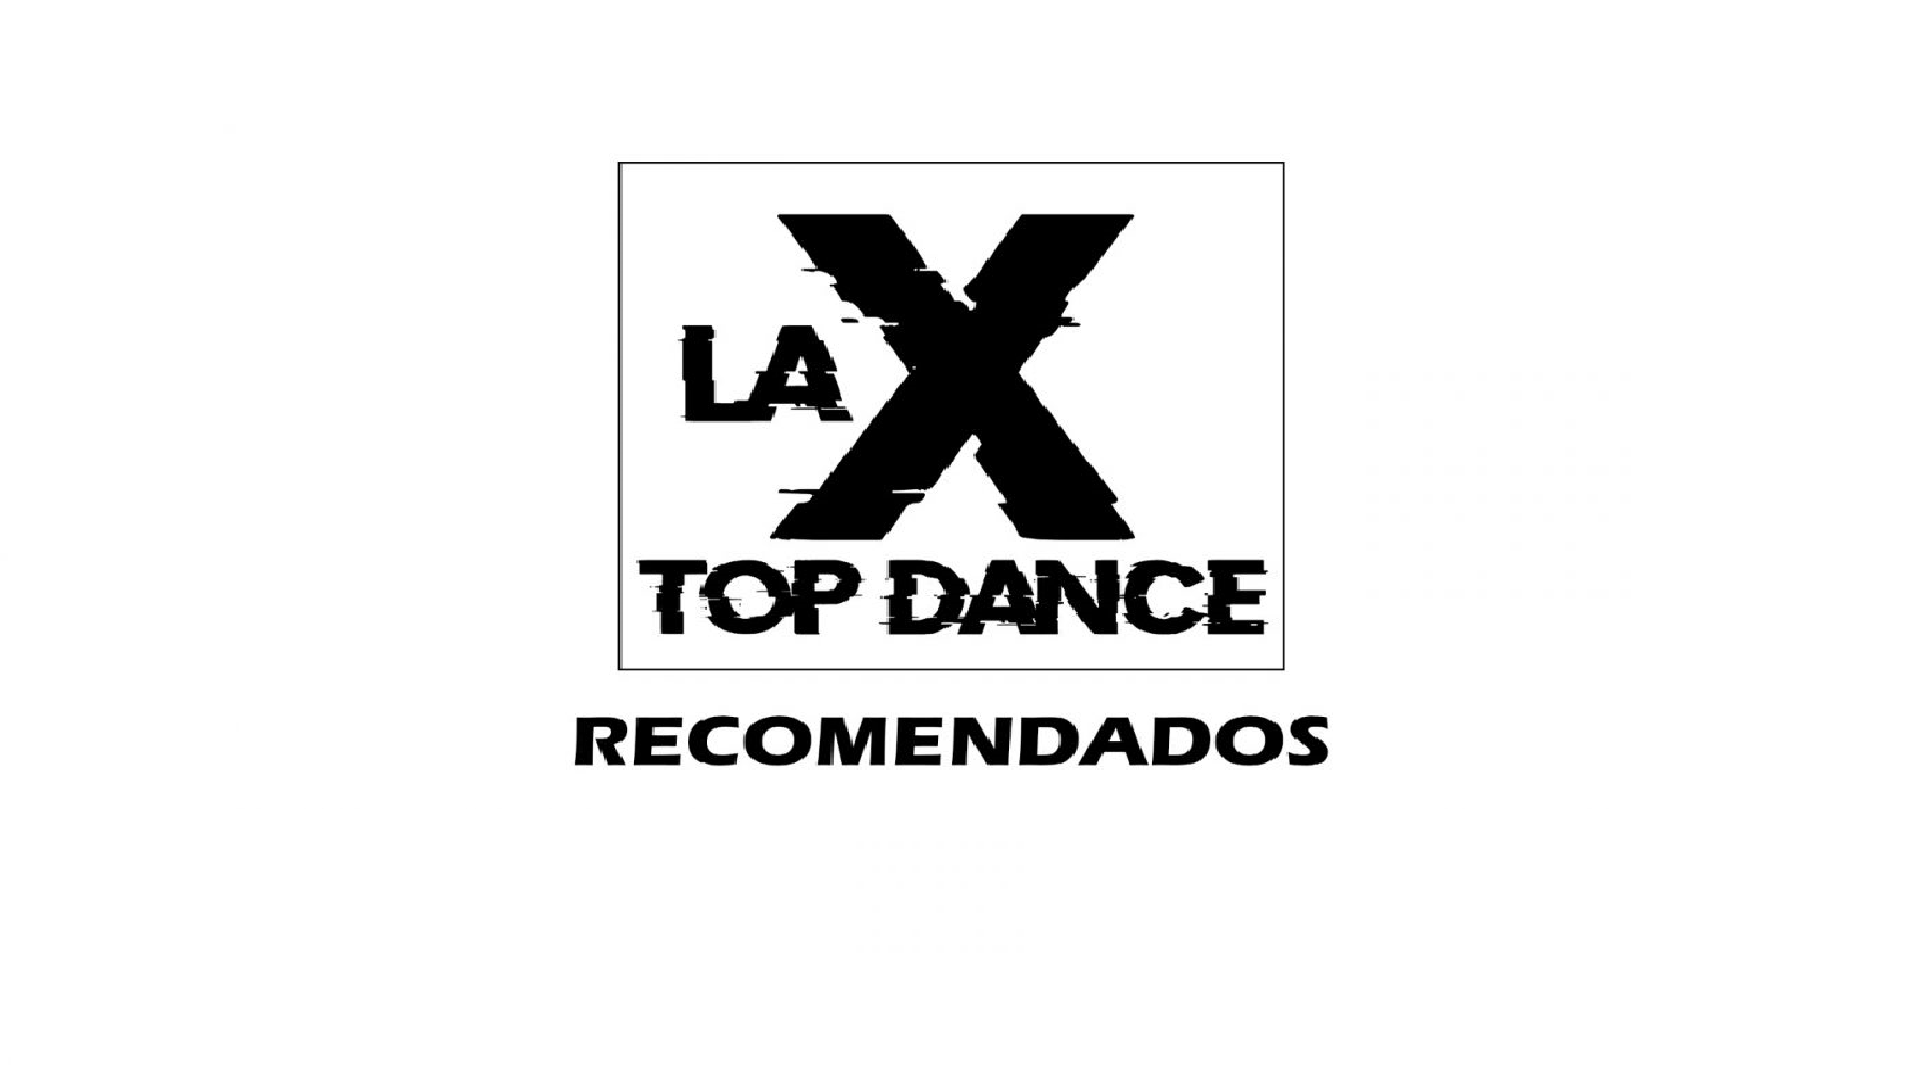 RECOMENDADOS LA X TOP DANCE  26 DE MARZO